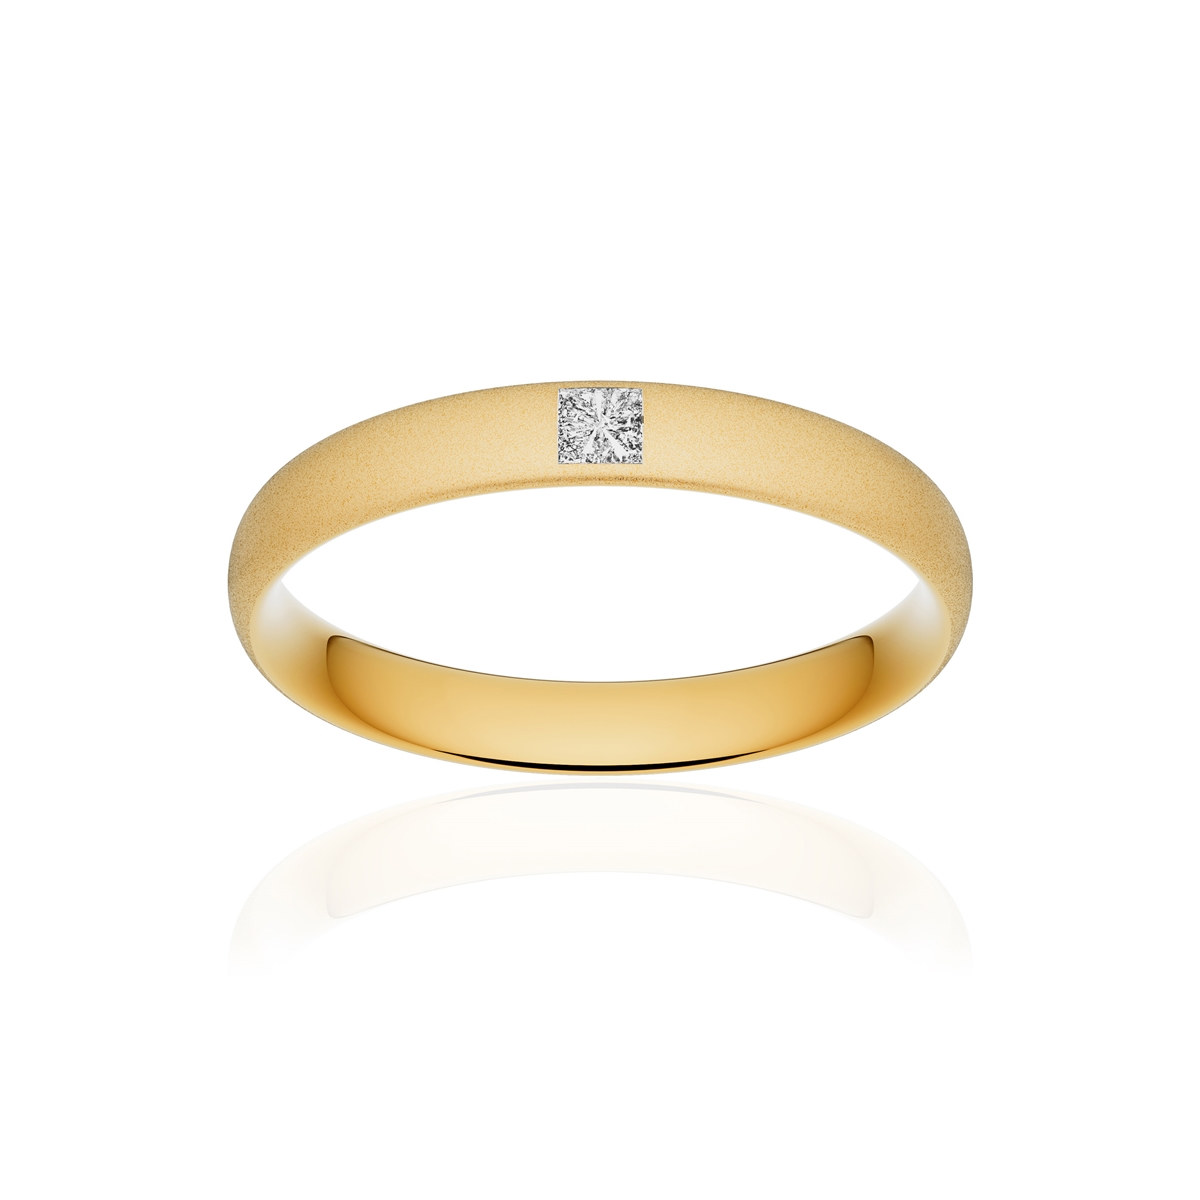 Alliance or 750 jaune sablé demi-jonc confort 3,5mm diamant princesse